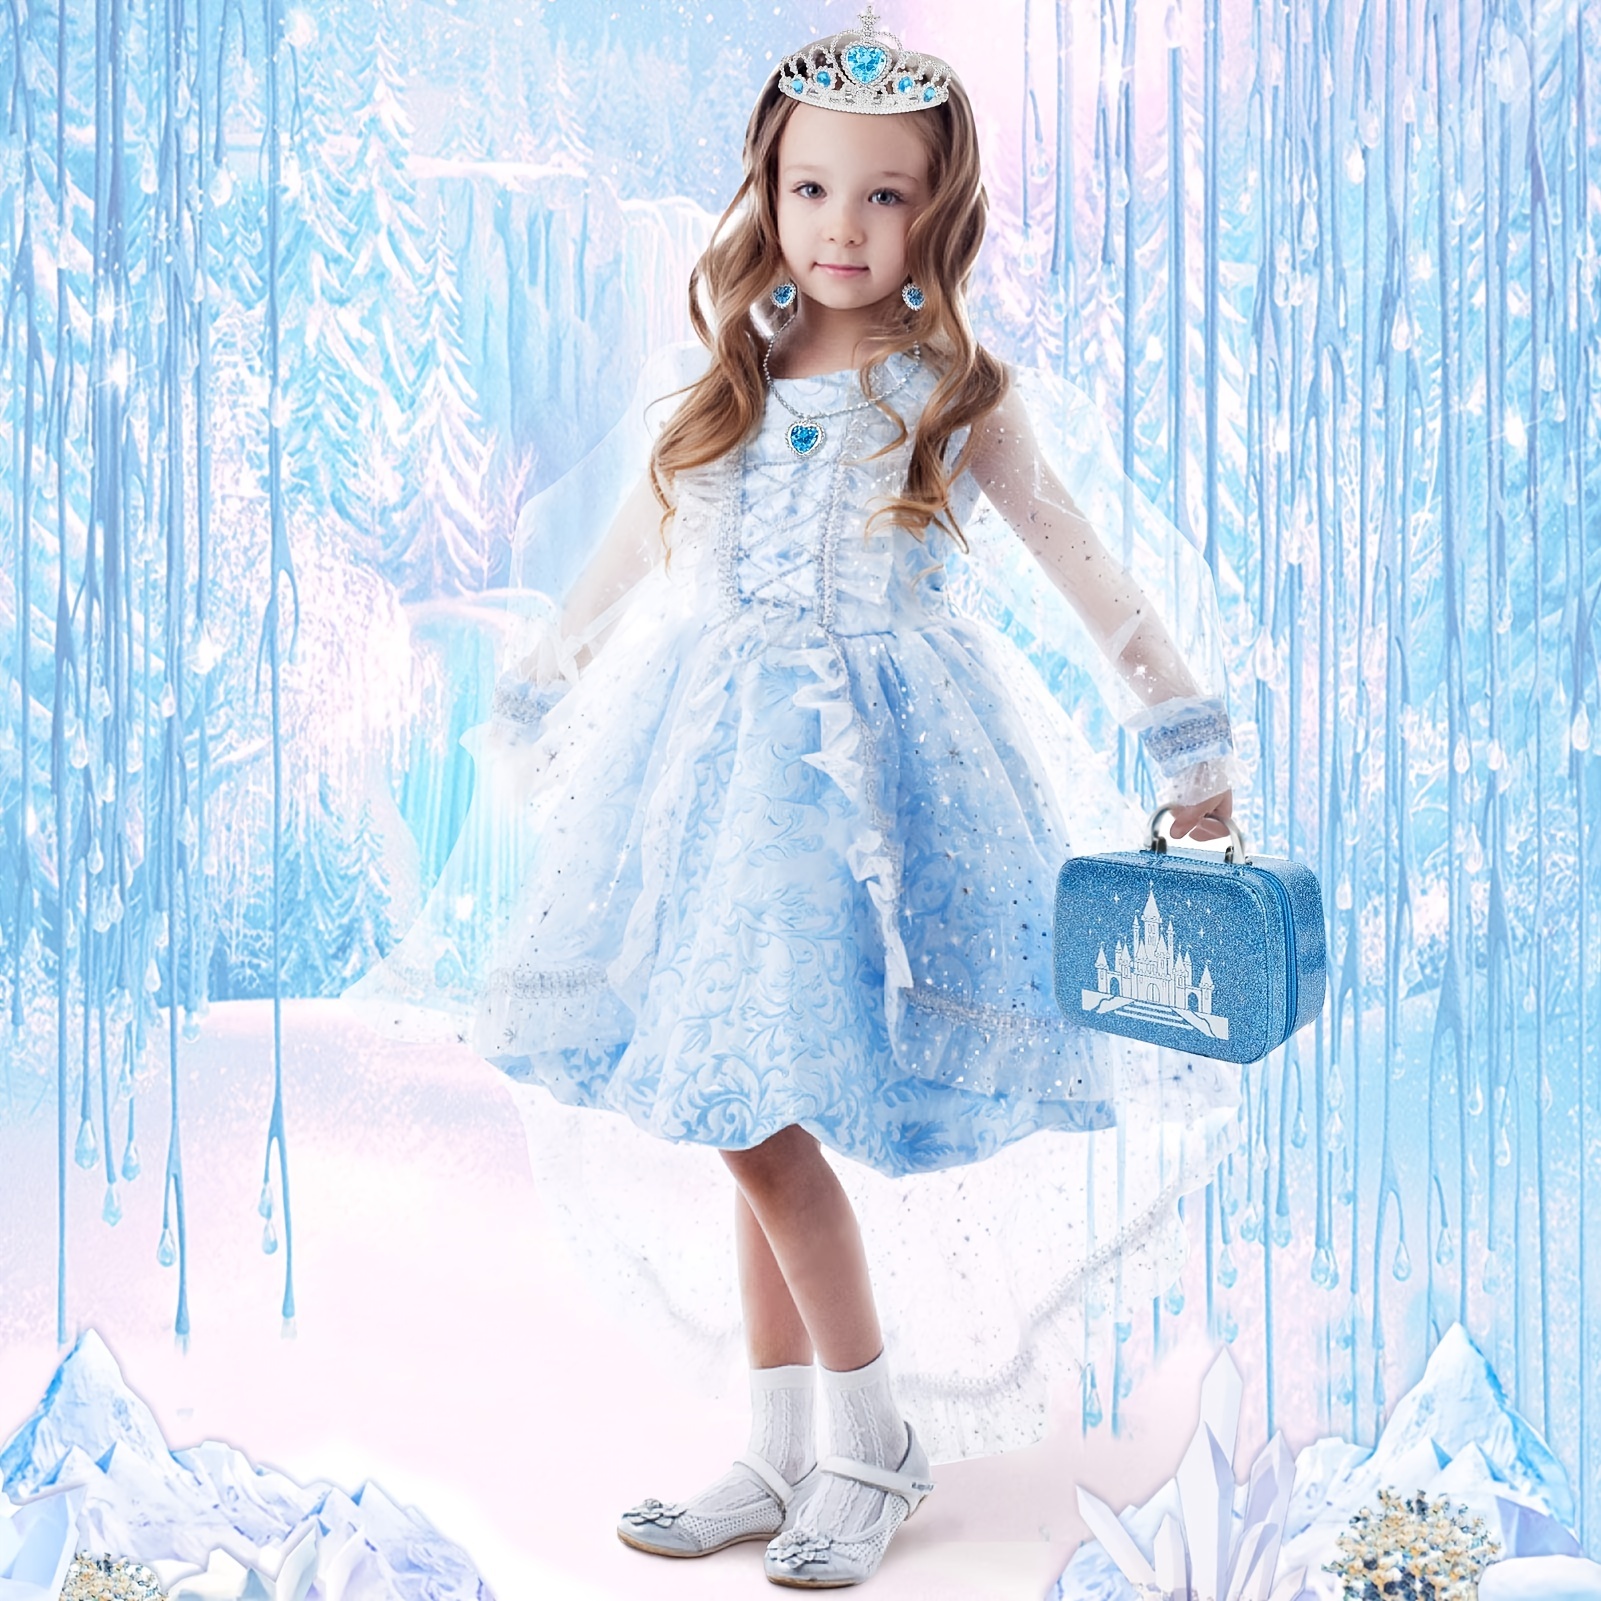 Kids Makeup Kit For Girl Real Makeup Set Toys With Princess - Temu